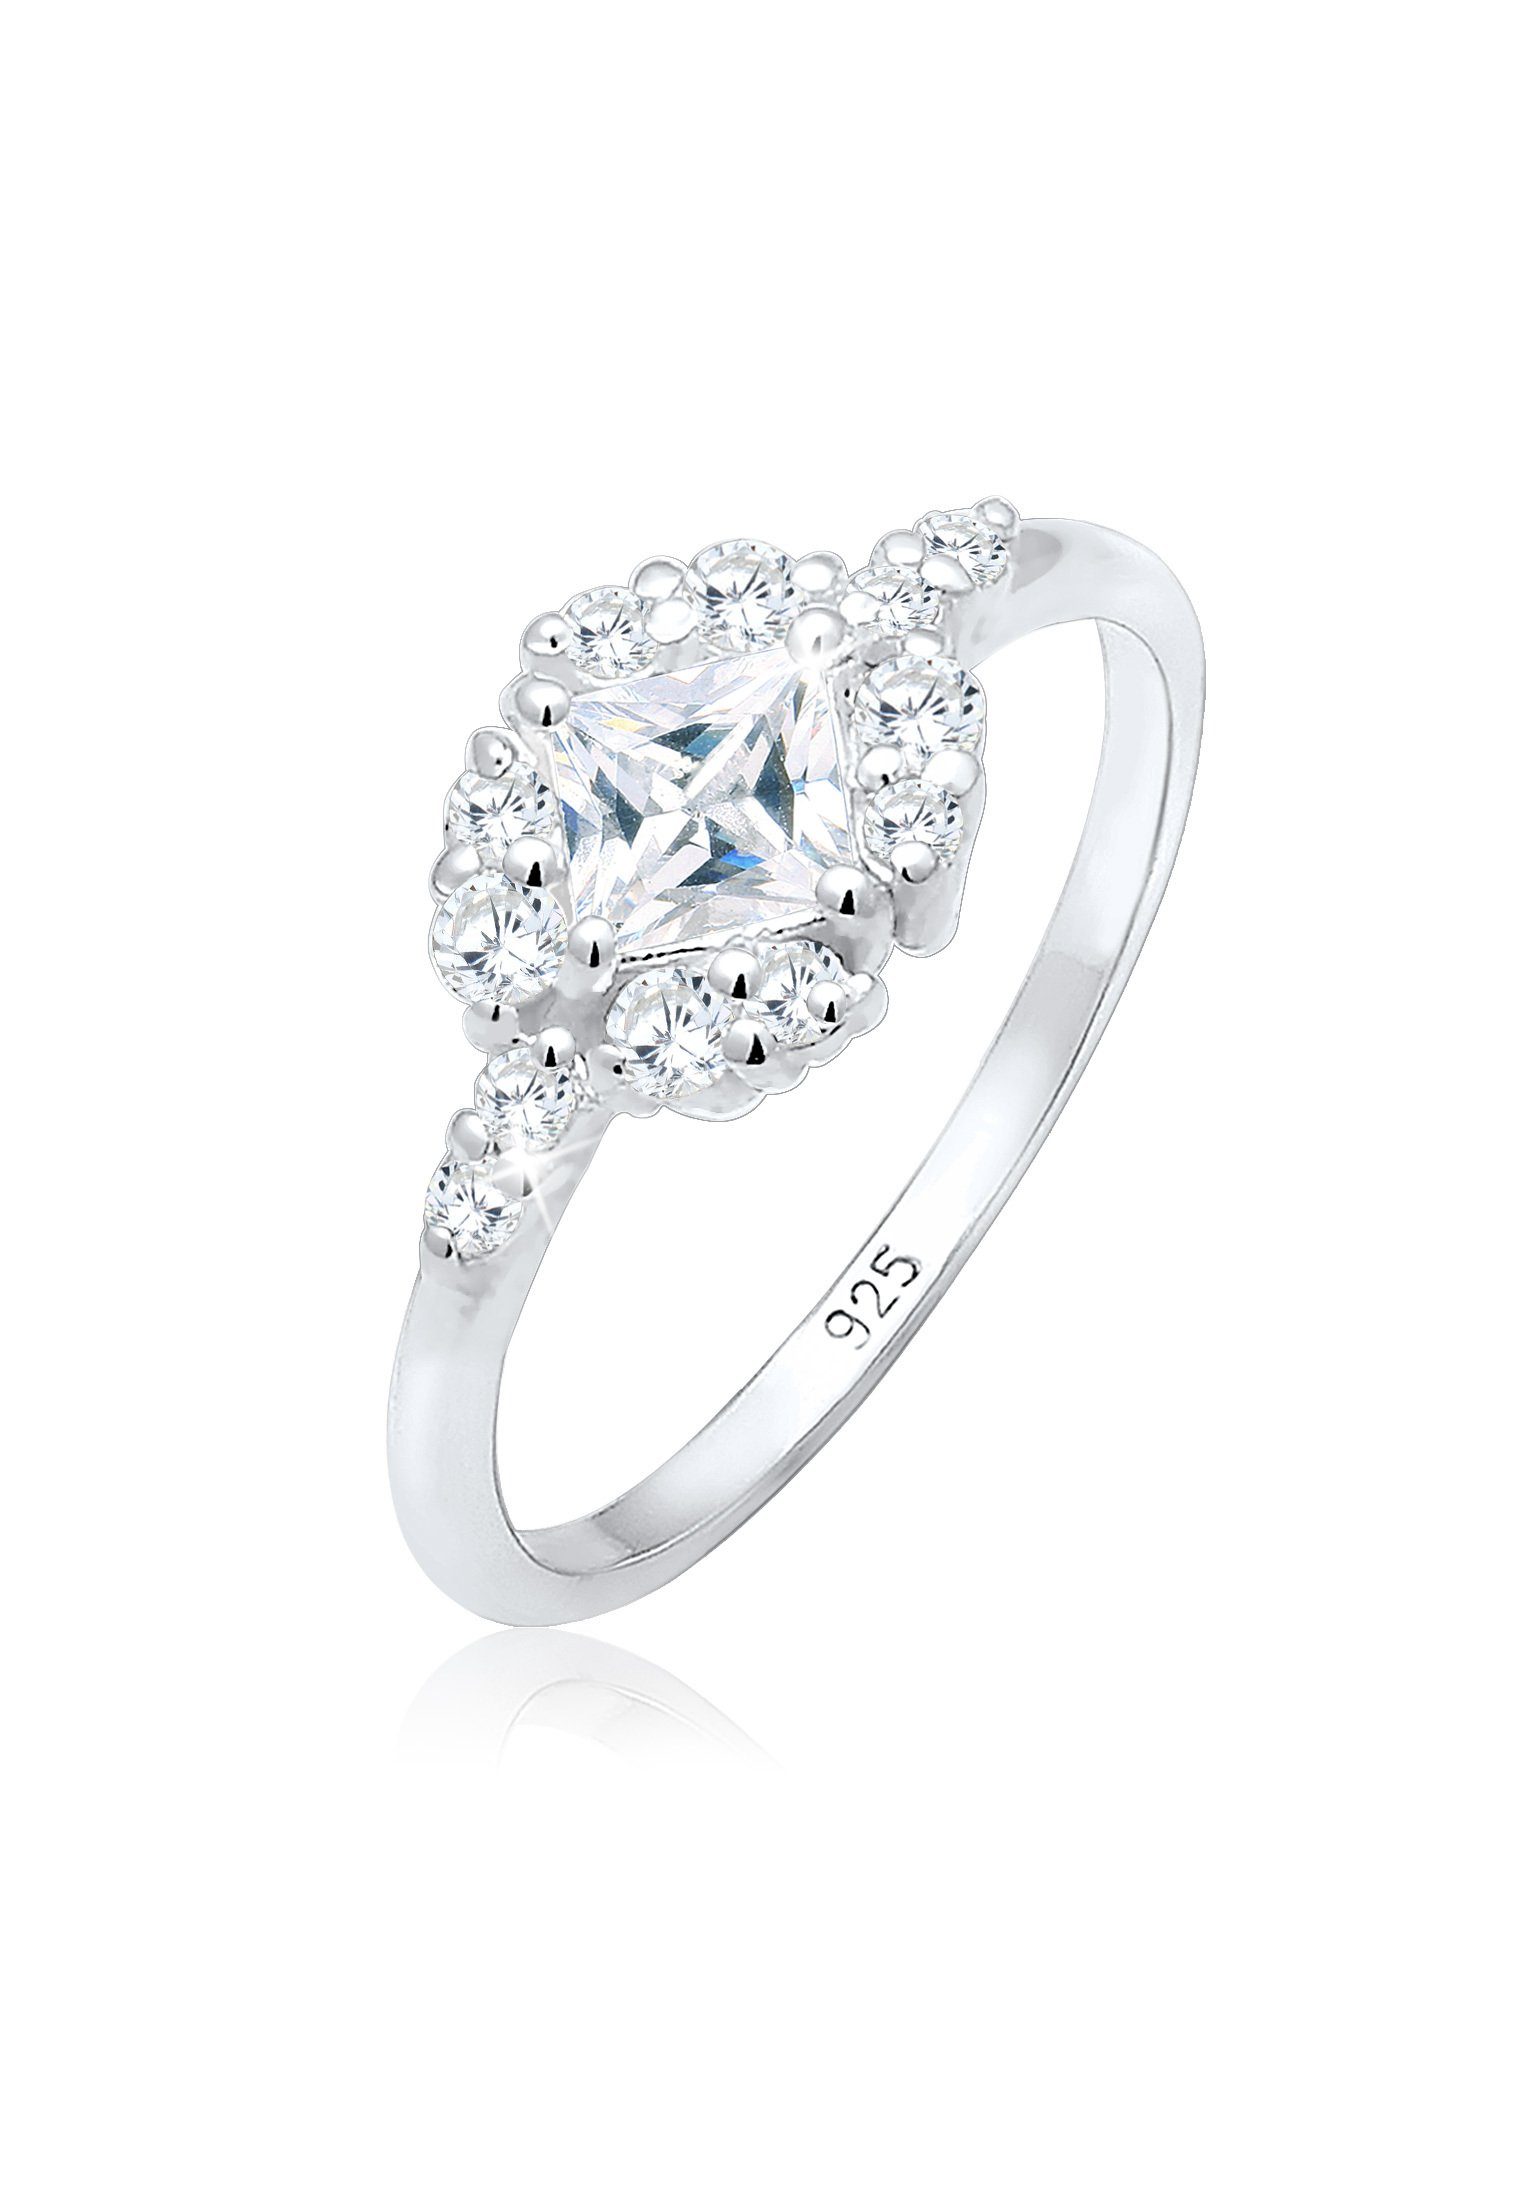 Silber, Verlobungs-Ring Sterling 925 Kristall Zirkonia Elli aus Verlobung Silber Steine Premium Verlobungsring 925 Romantisch